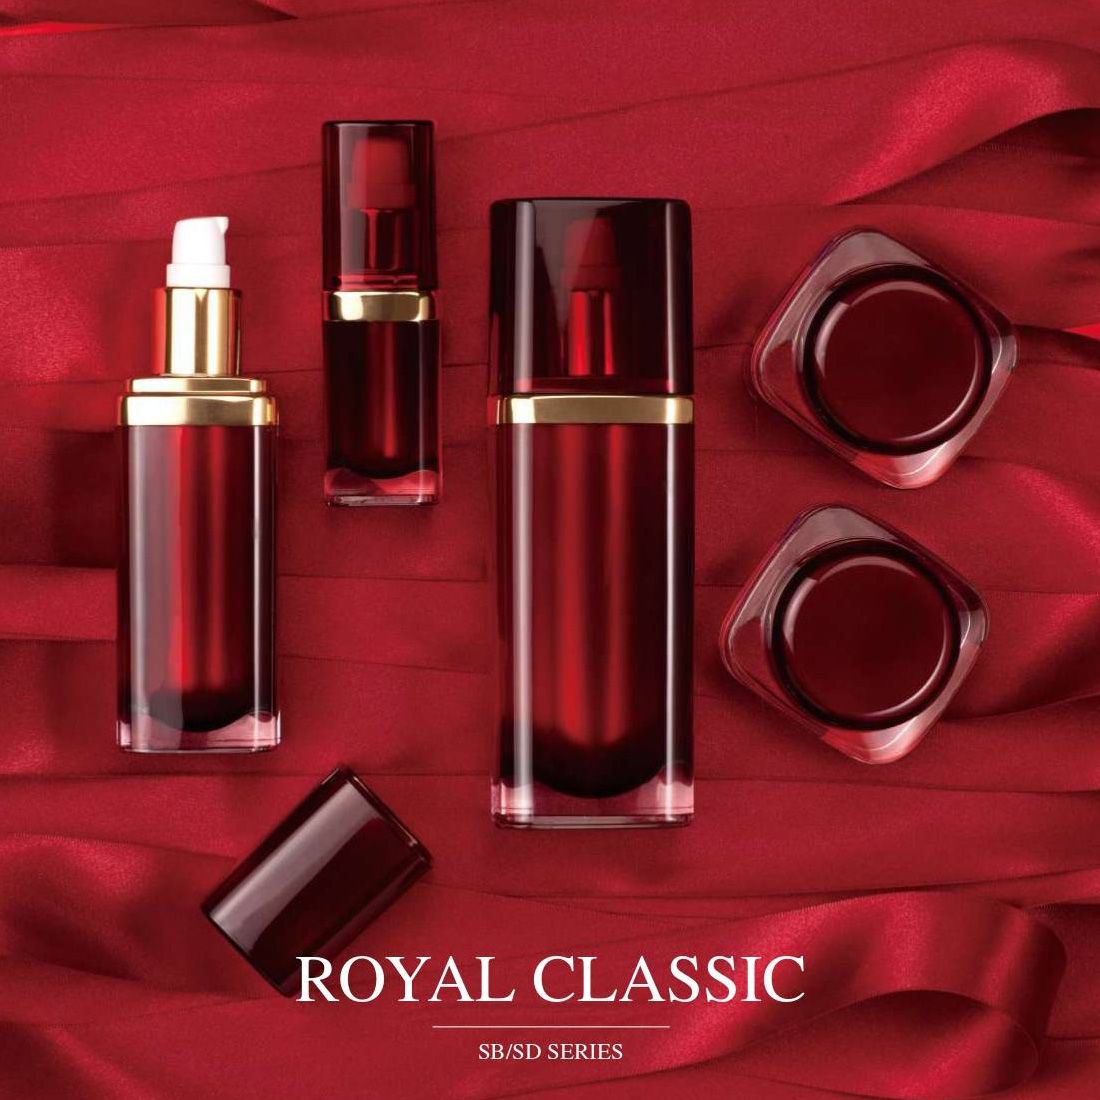 ロイヤル クラシック (アクリル製高級化粧品およびスキンケア パッケージ) SB/SDシリーズ